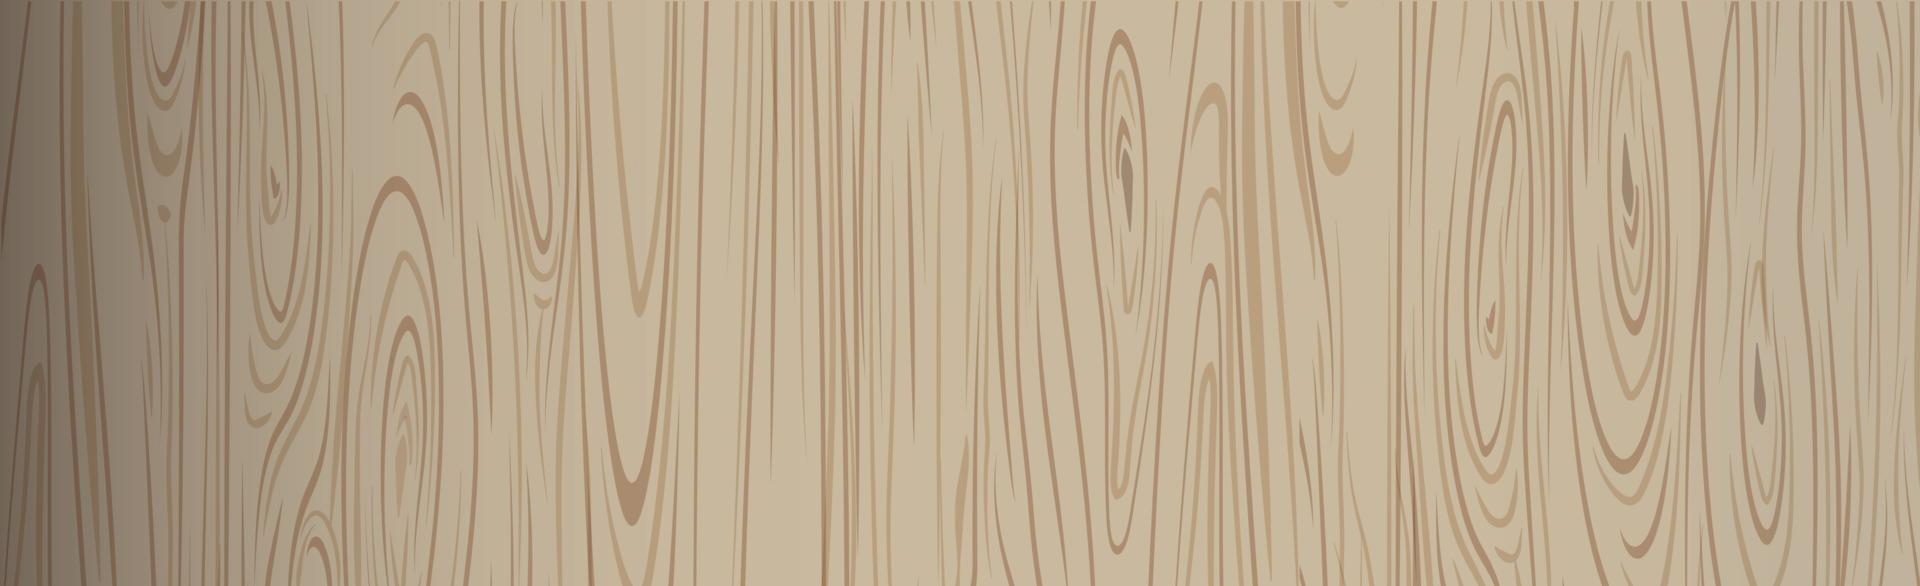 padrão de textura realista de madeira escura, fundo - vetor